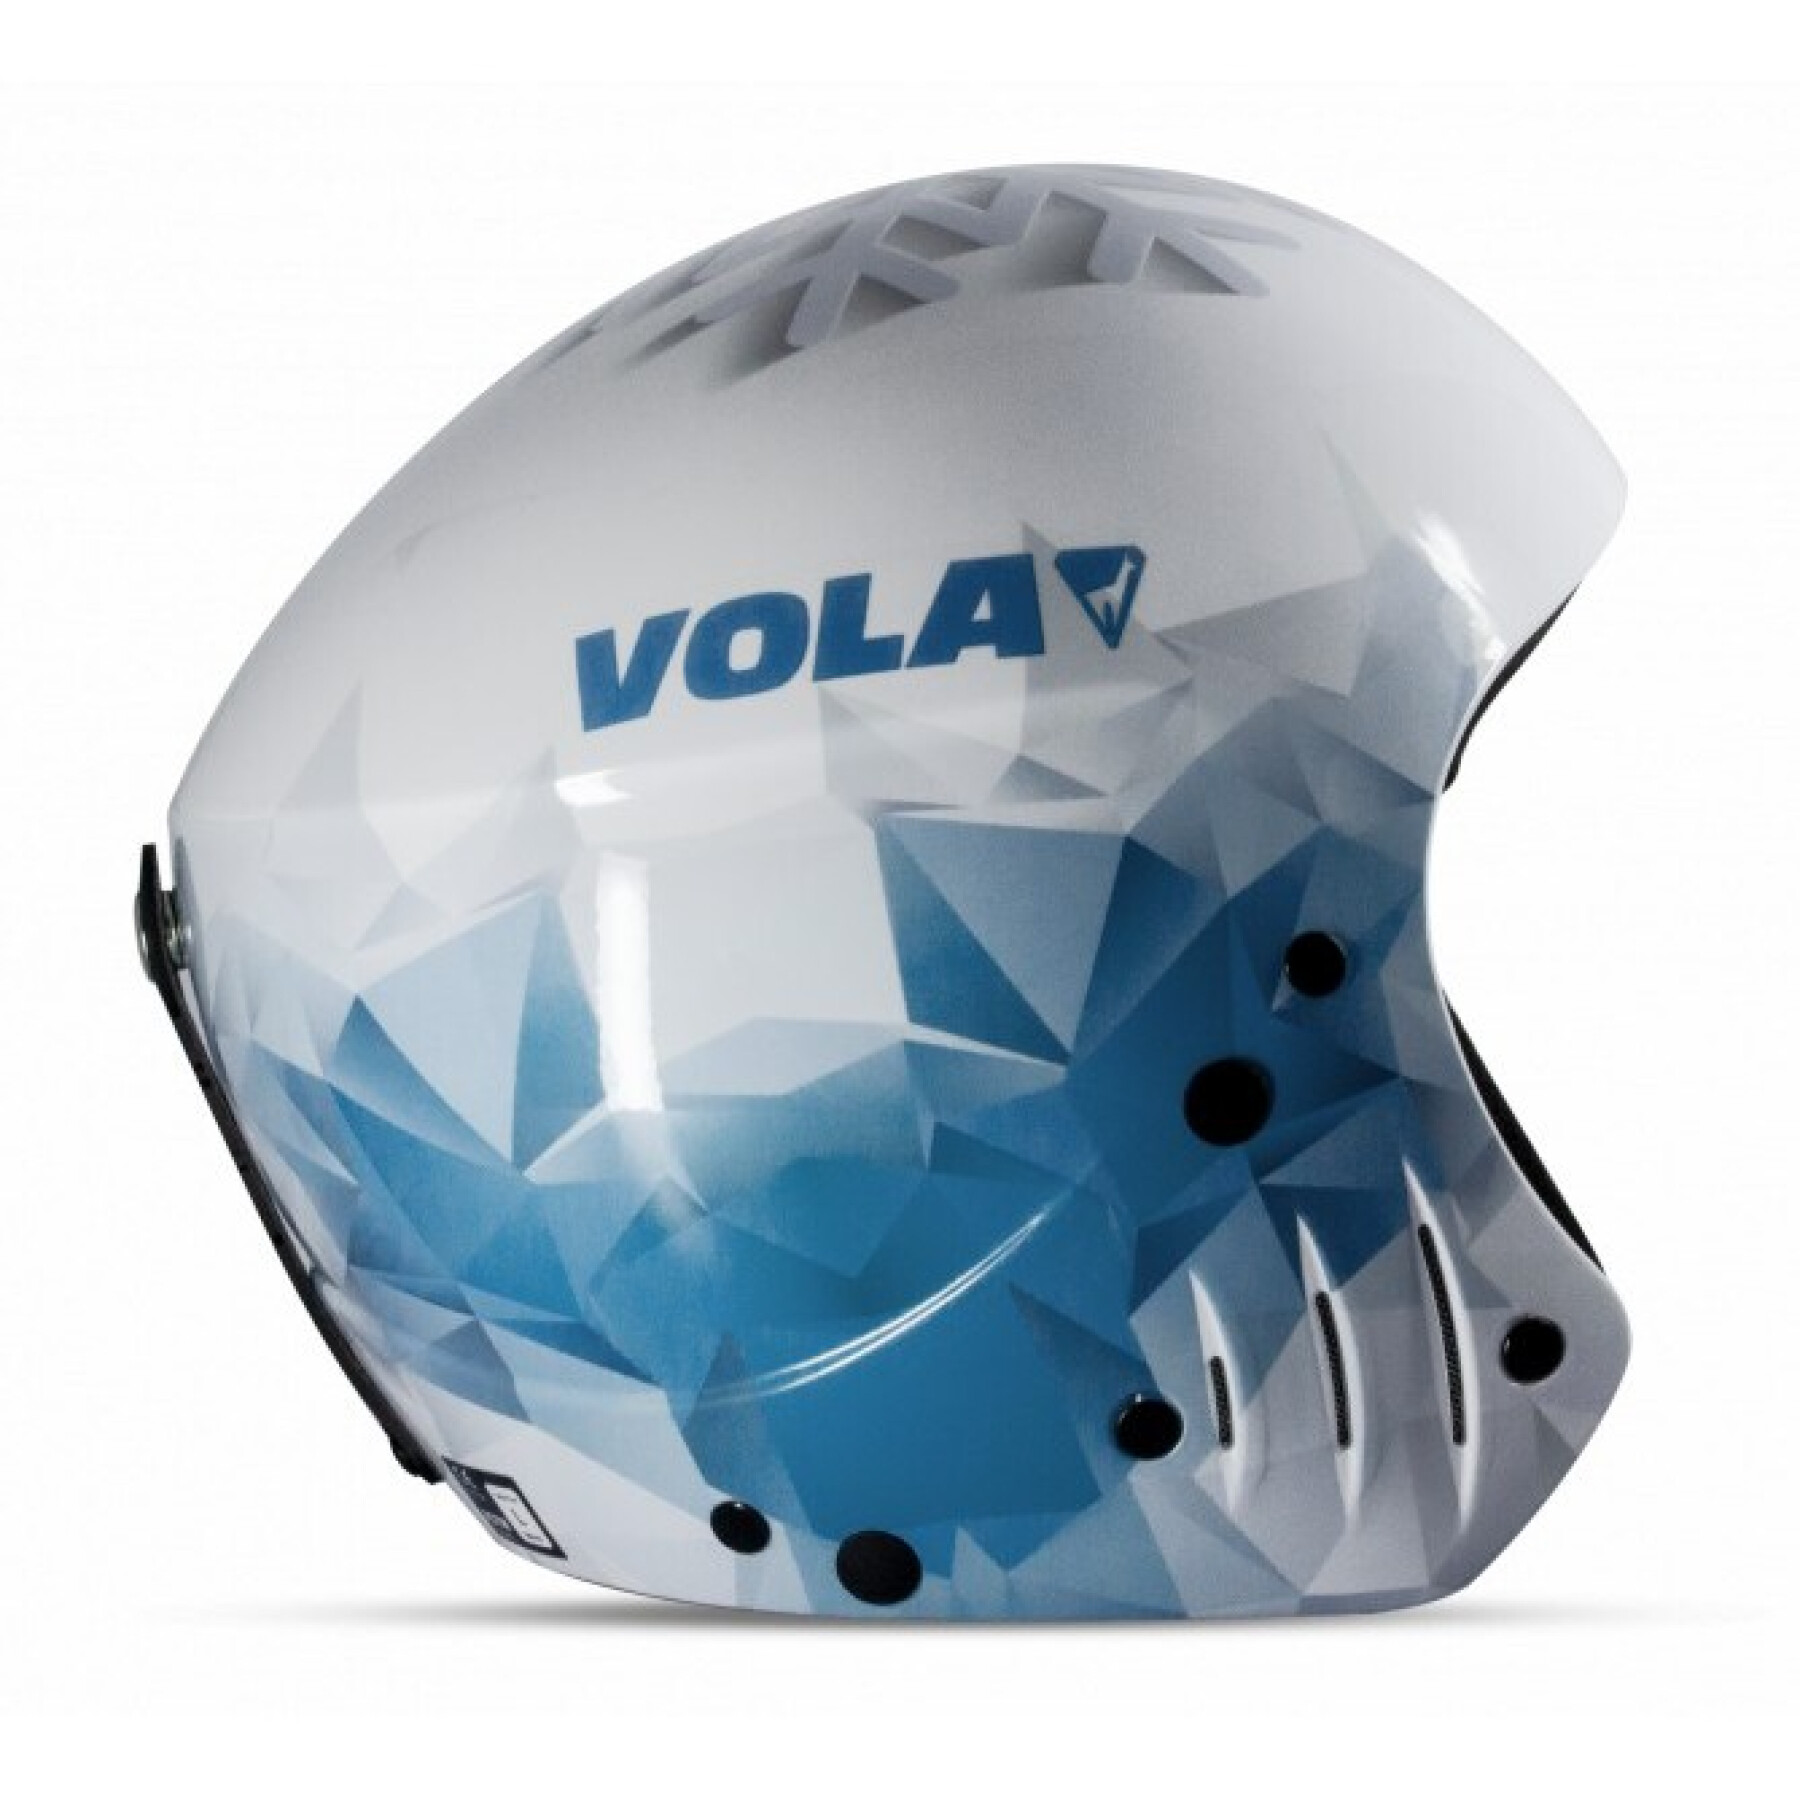 Ski helmet Vola Fis Flakes